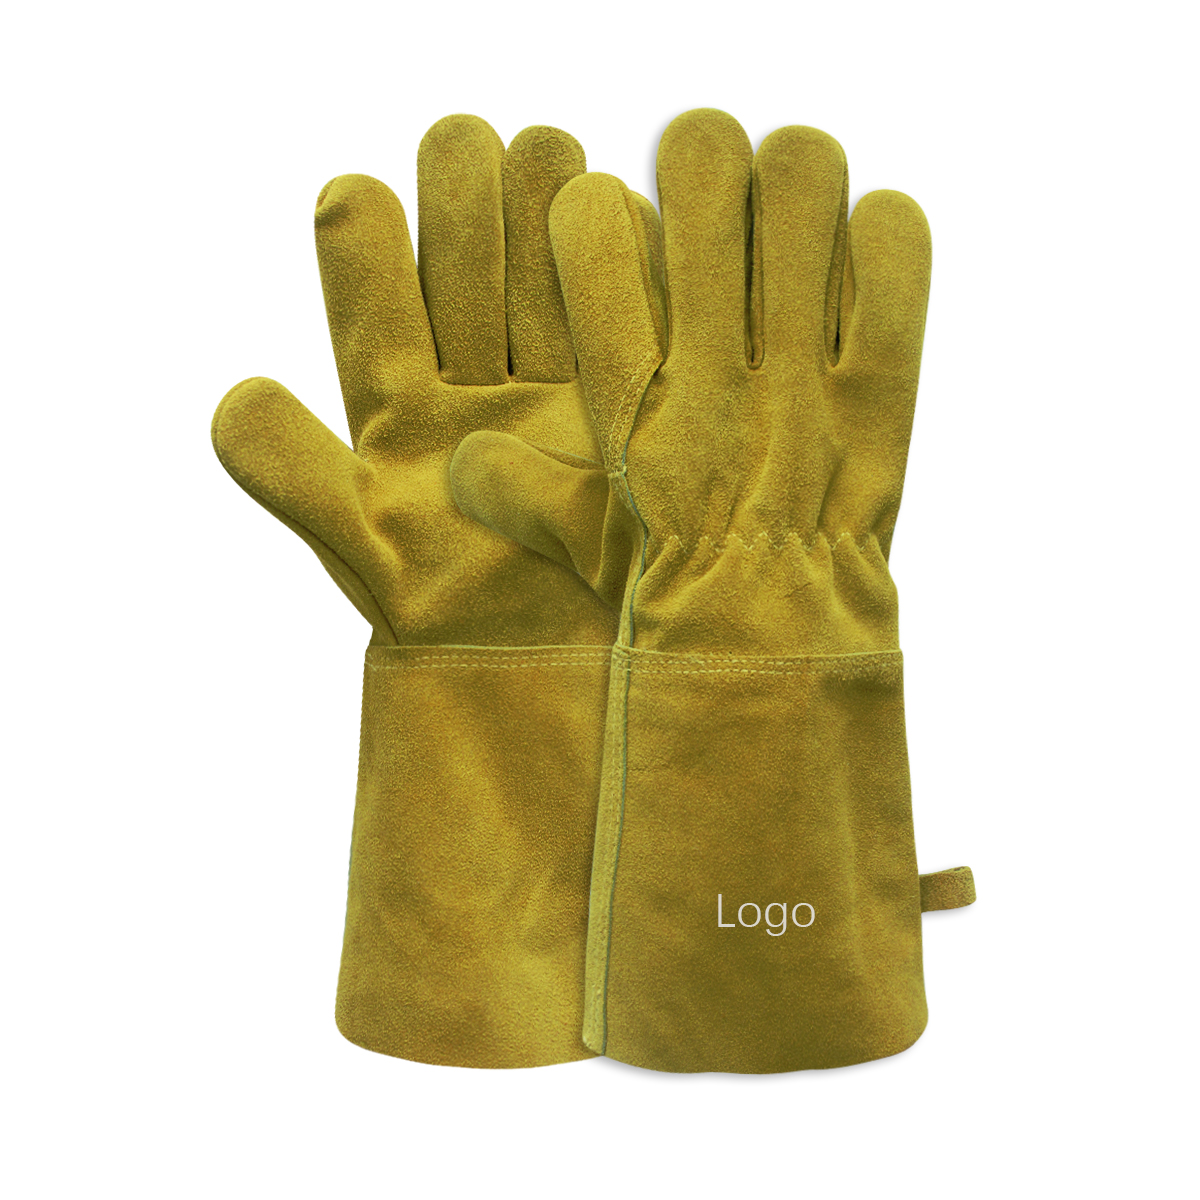 Mig Welding Tig Gloves Guantes De Soldadura Product Cowhide Leather Bopaki bo Bocha ba Mollo